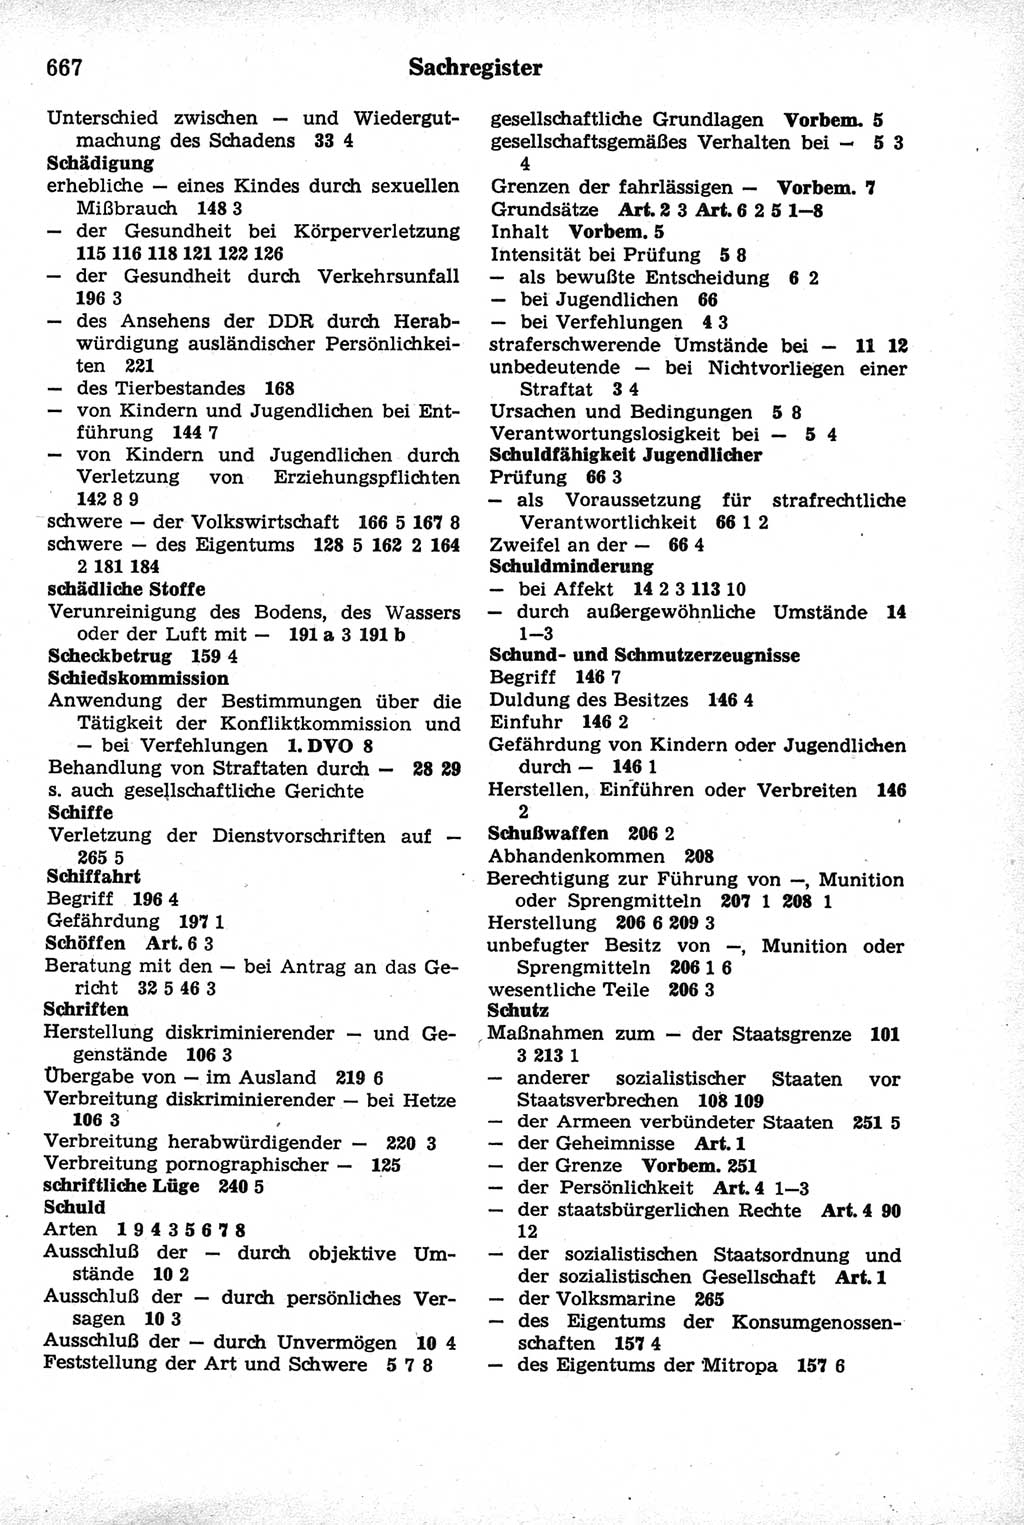 Strafrecht der Deutschen Demokratischen Republik (DDR), Kommentar zum Strafgesetzbuch (StGB) 1981, Seite 667 (Strafr. DDR Komm. StGB 1981, S. 667)